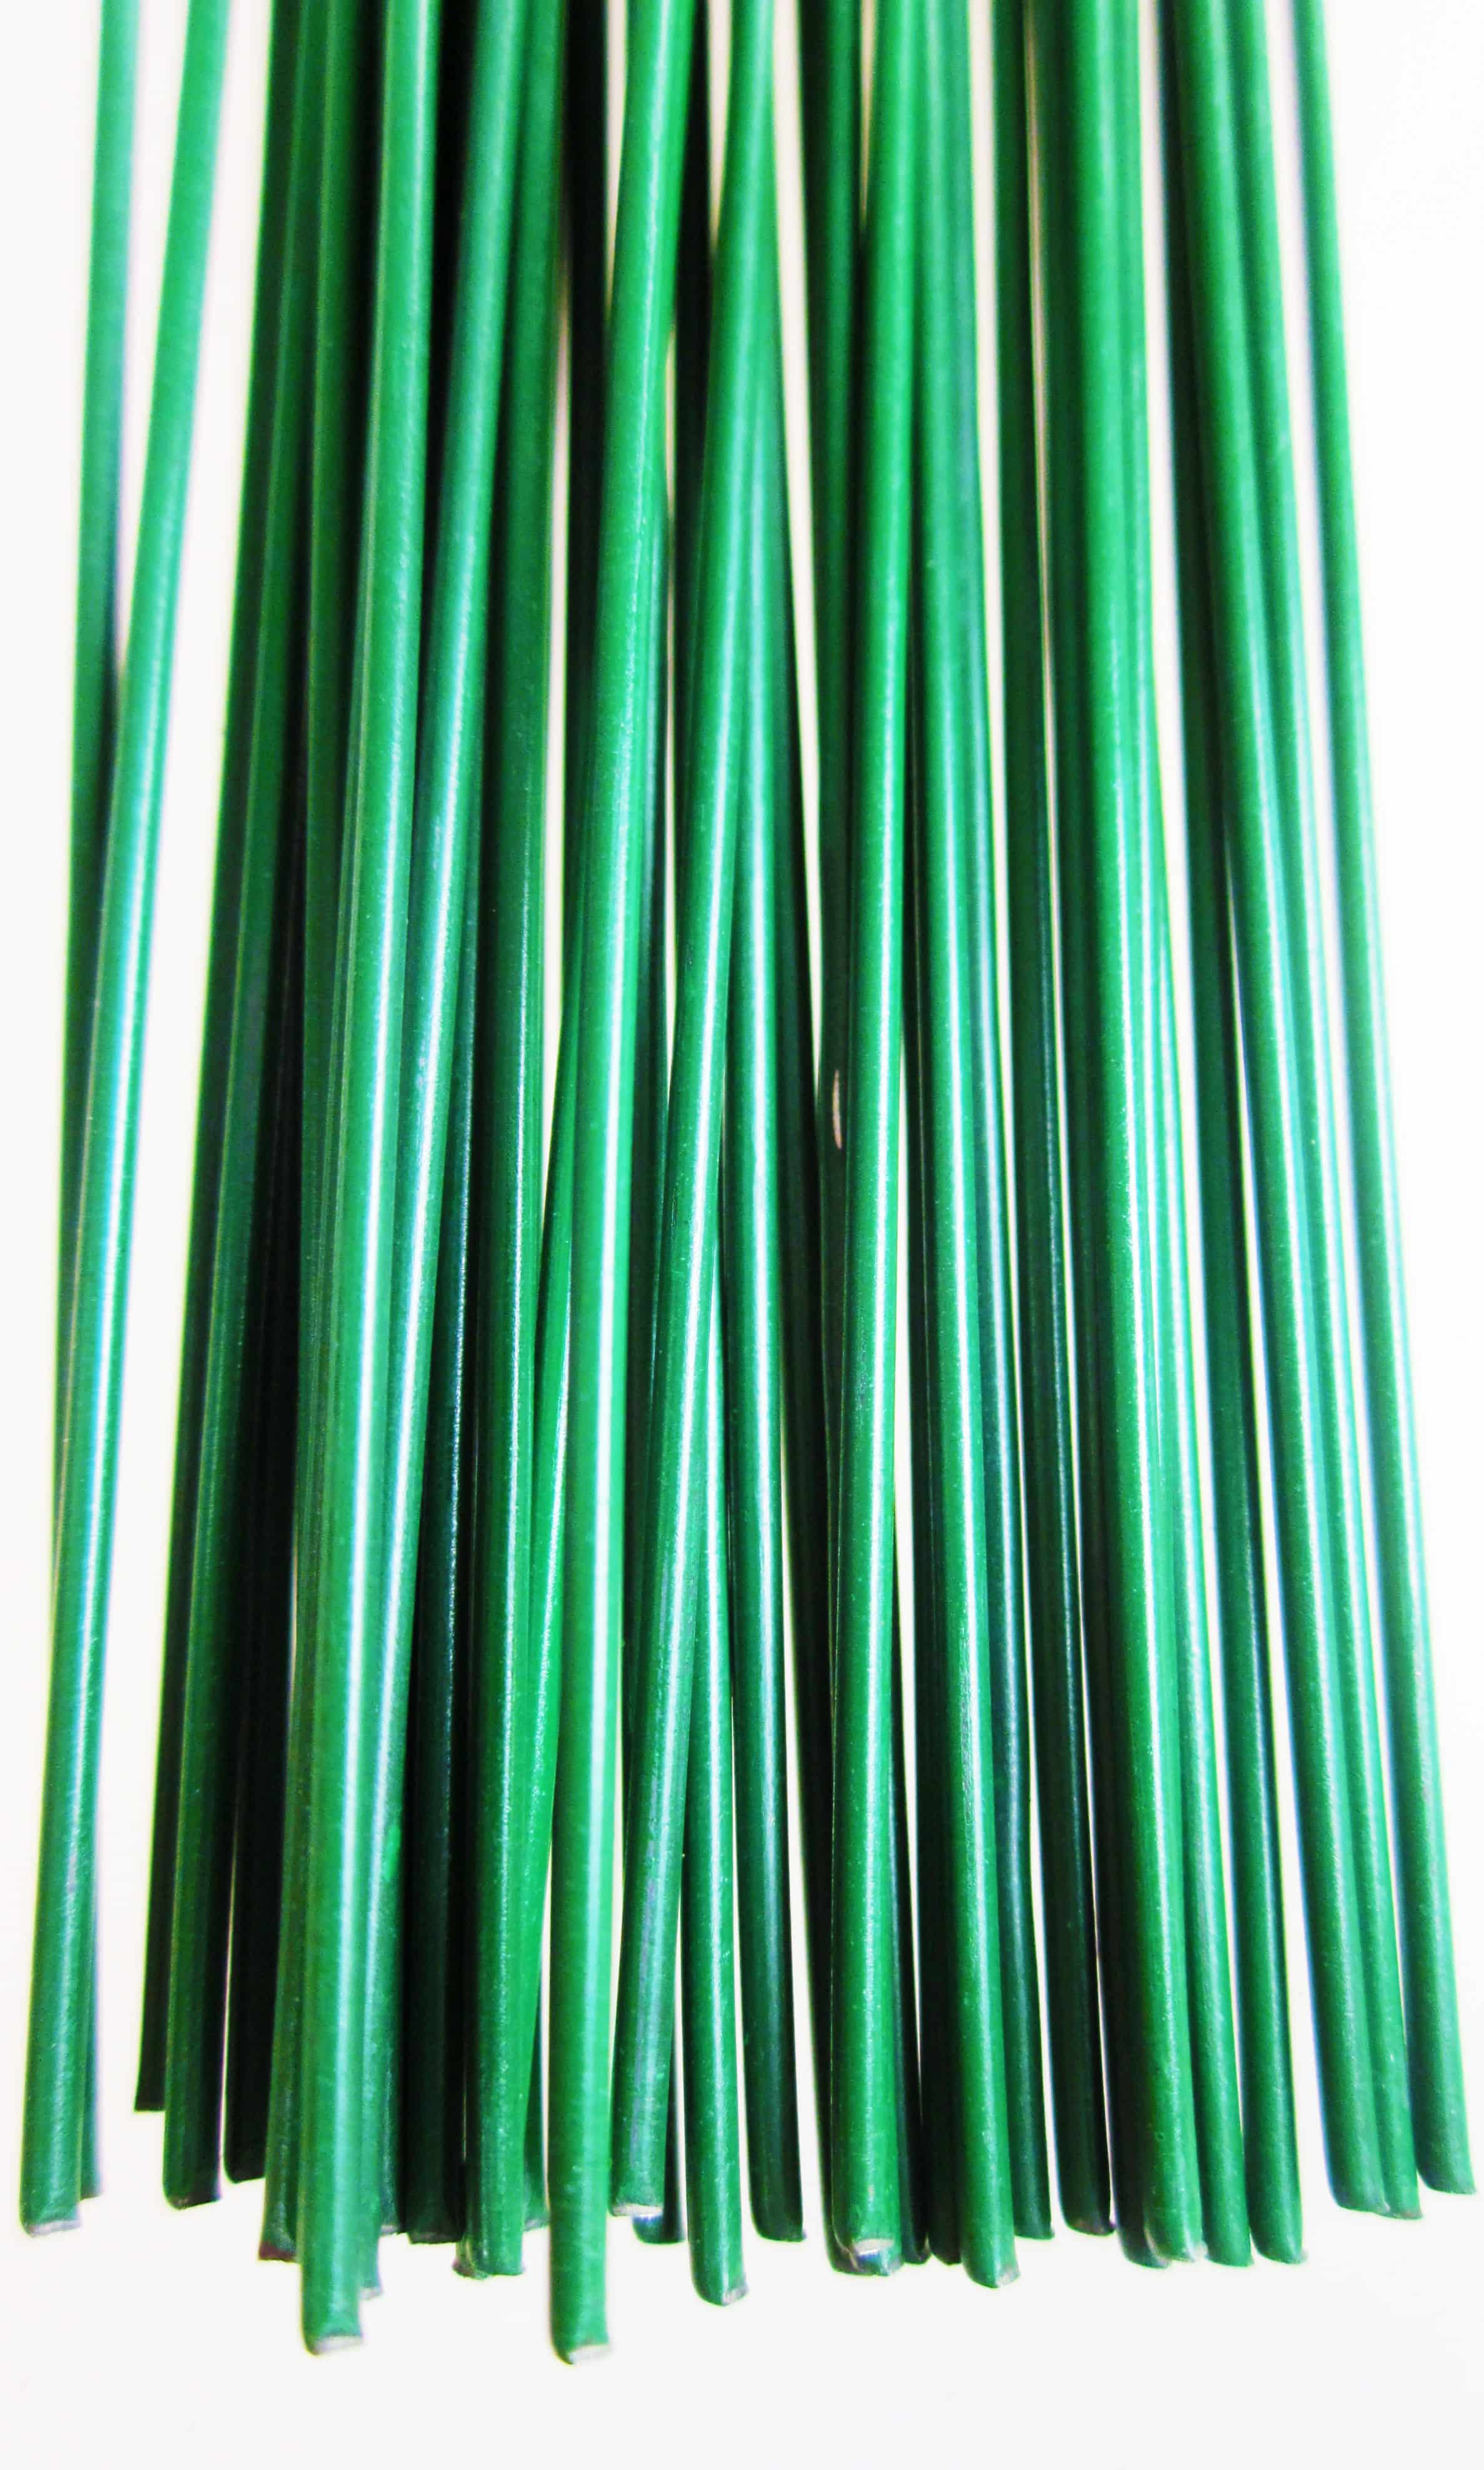 Steckdraht, grün lackiert, Ø 0,8 mm, Längen 400 mm, 100g